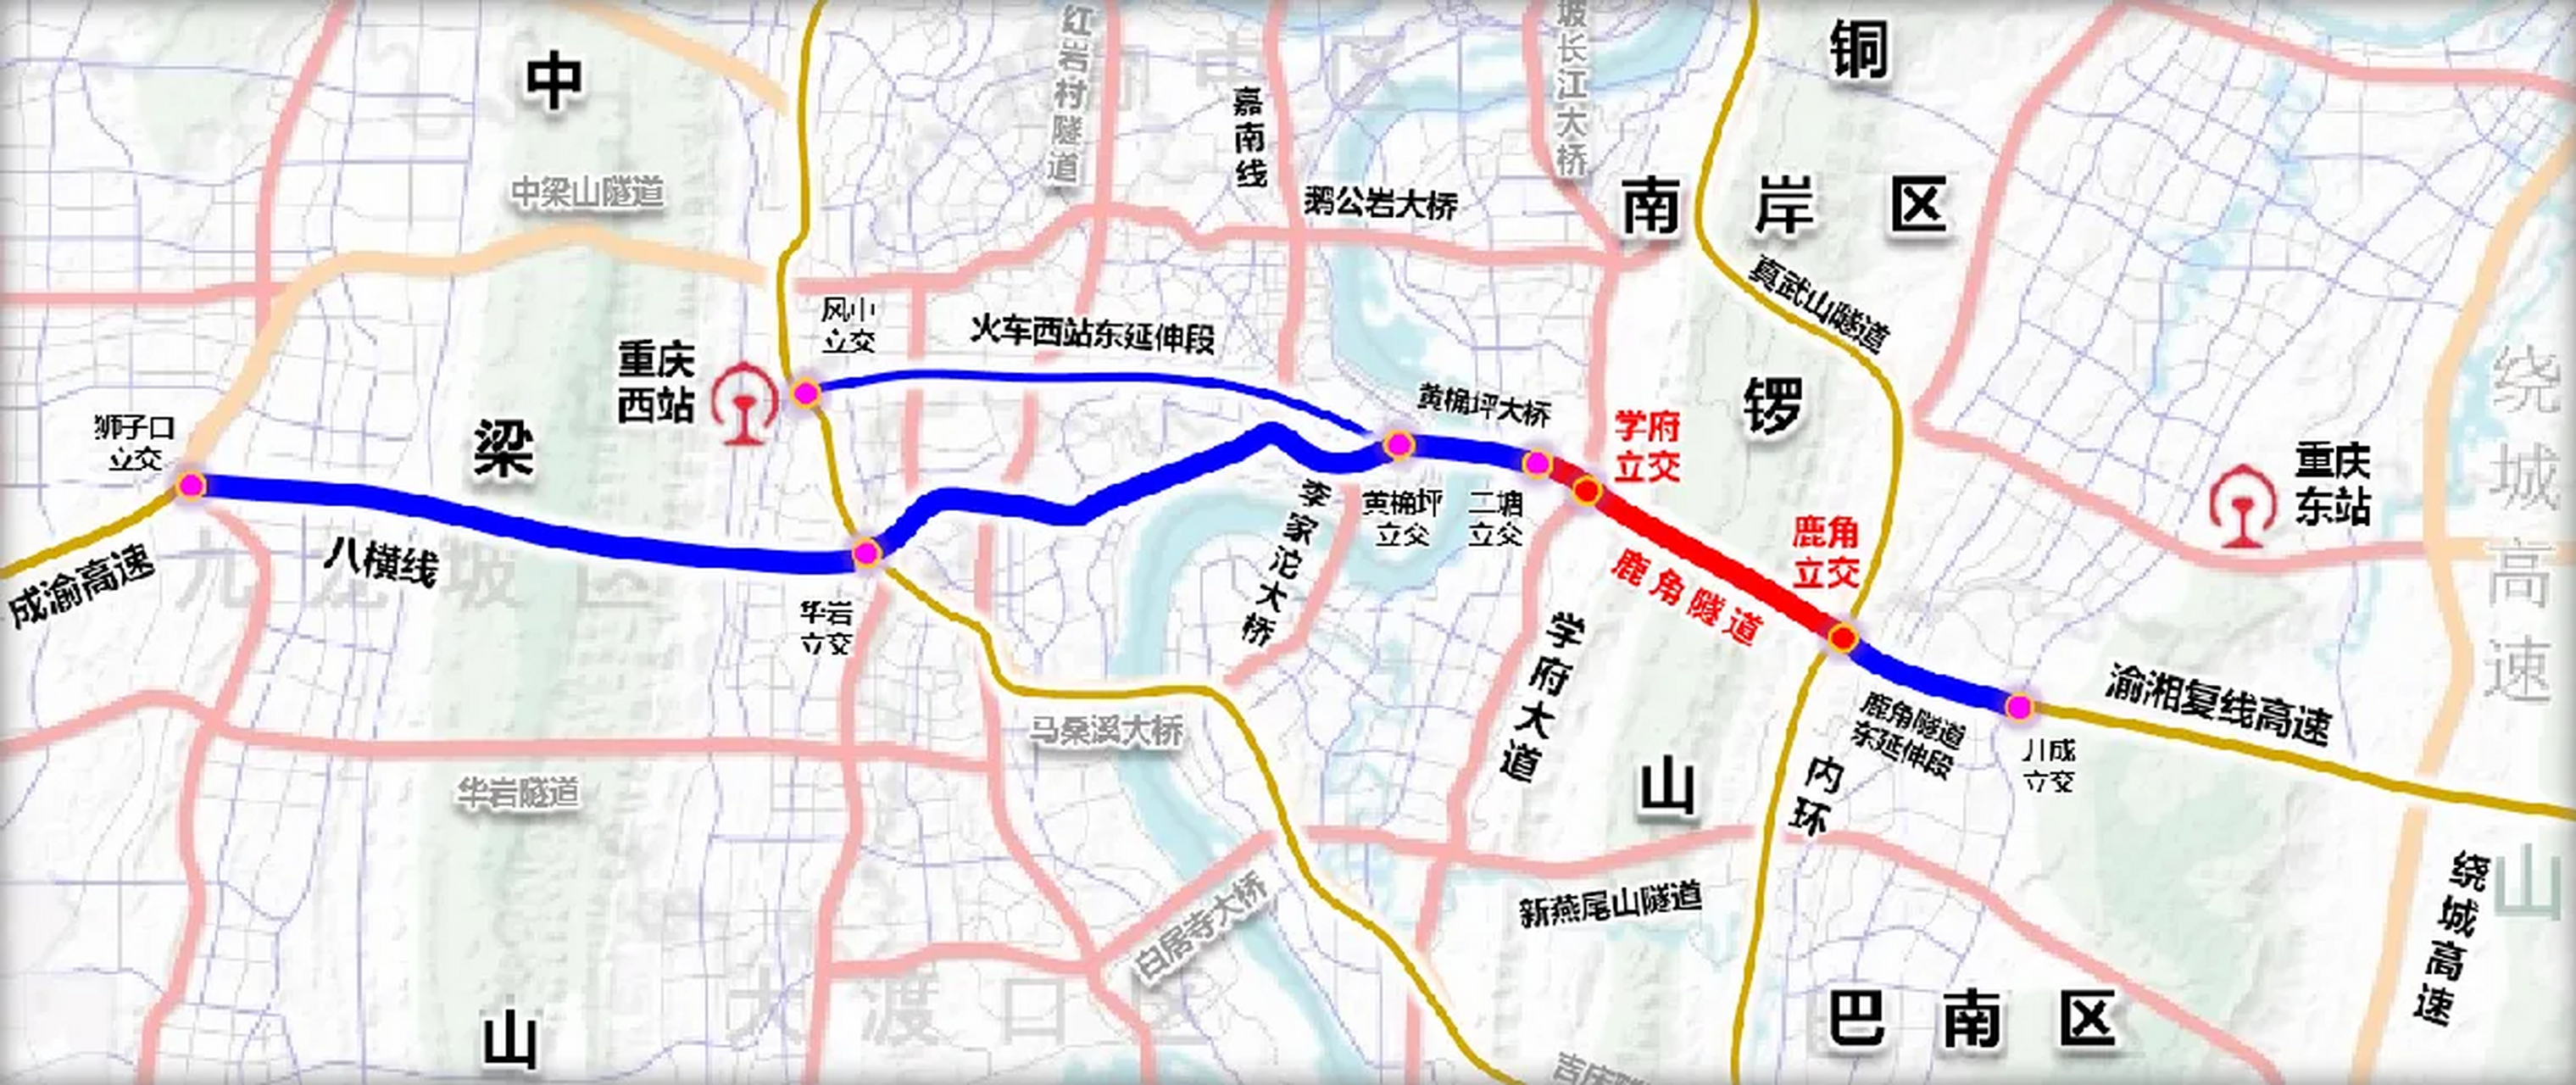 重庆鹿角隧道工程(巴南段)南泉街道部分,已于6月30日圆满完成交地任务